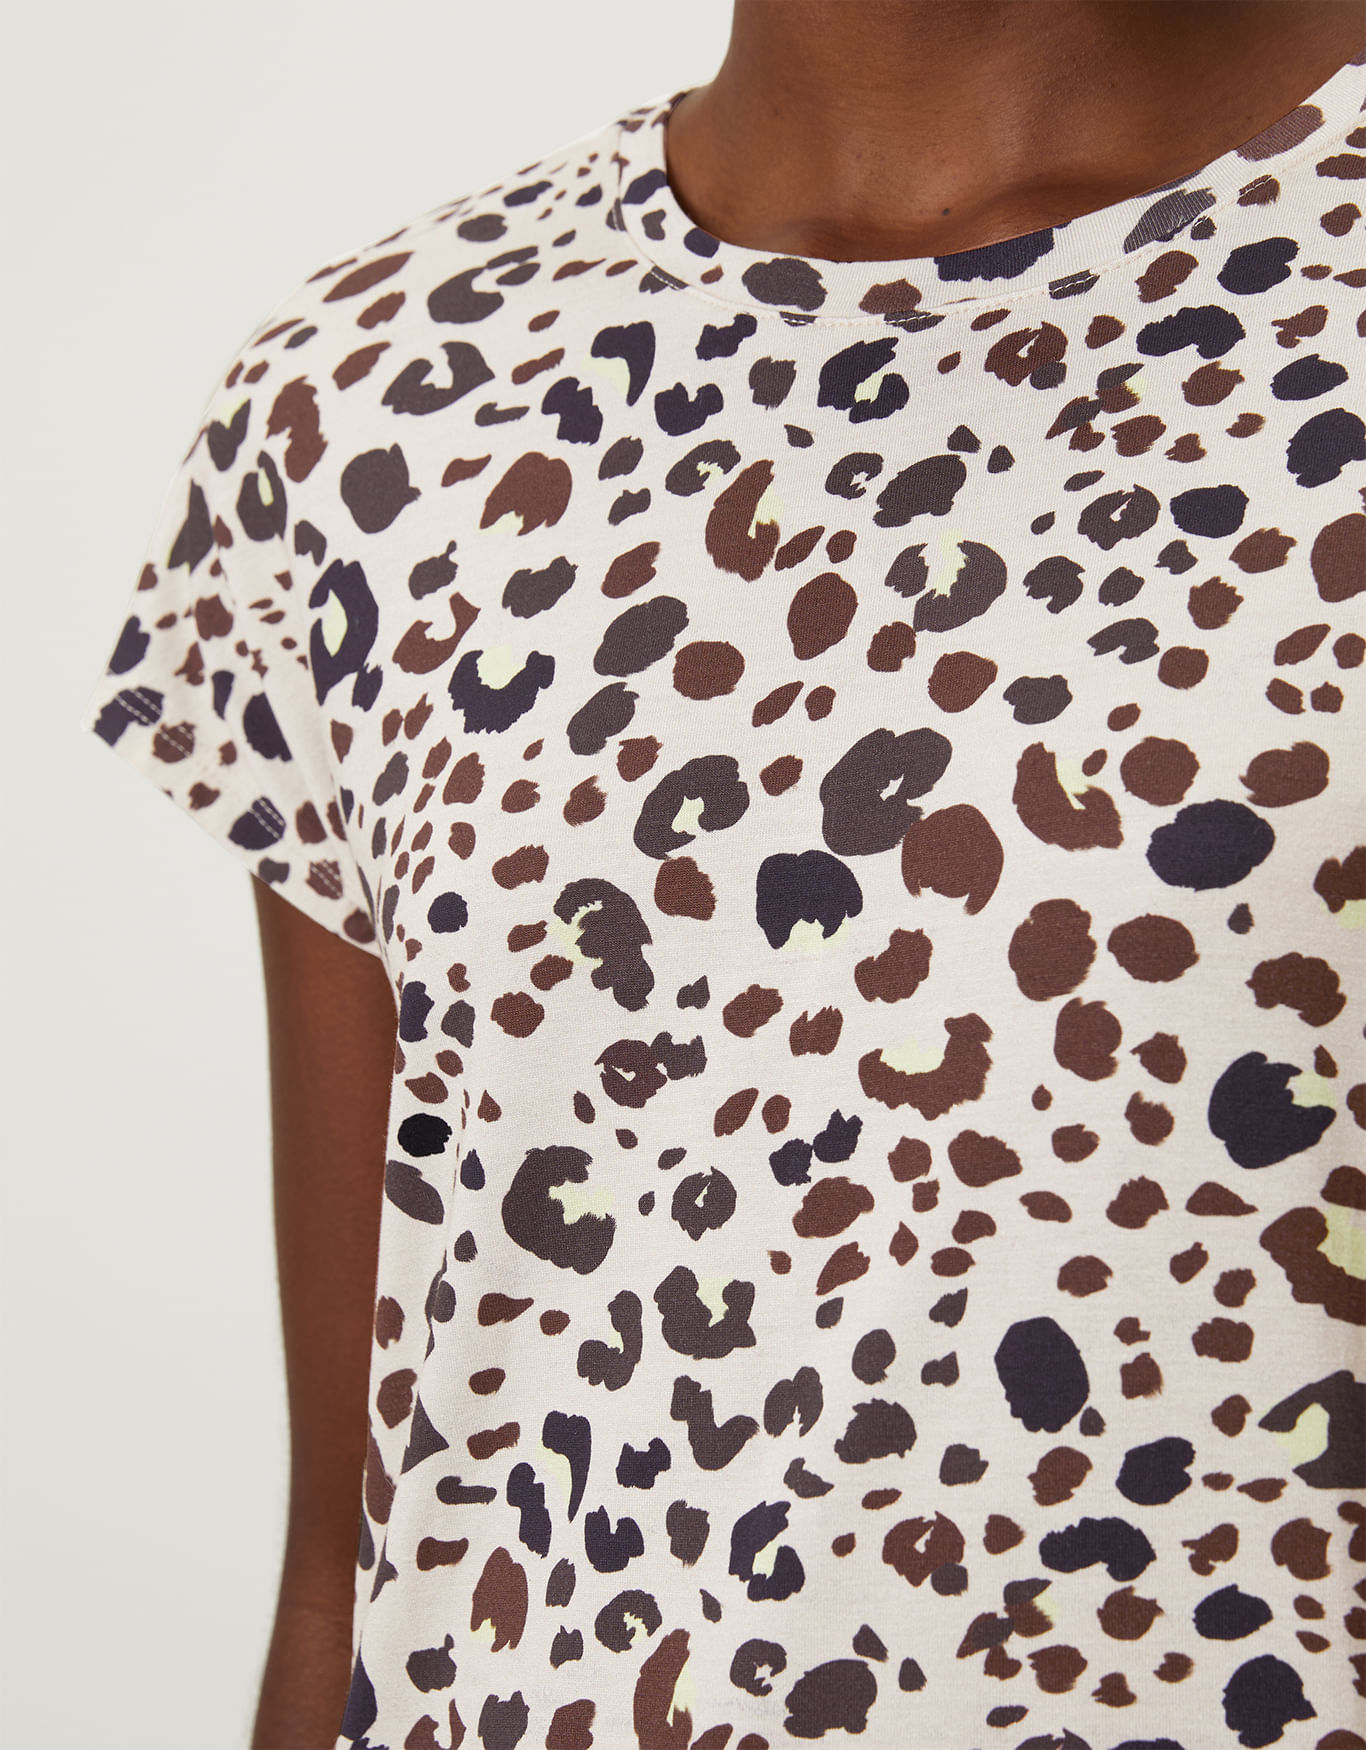 Blusa T-shirt Camiseta Feminina Estampada - Oncinha - Várias Cores